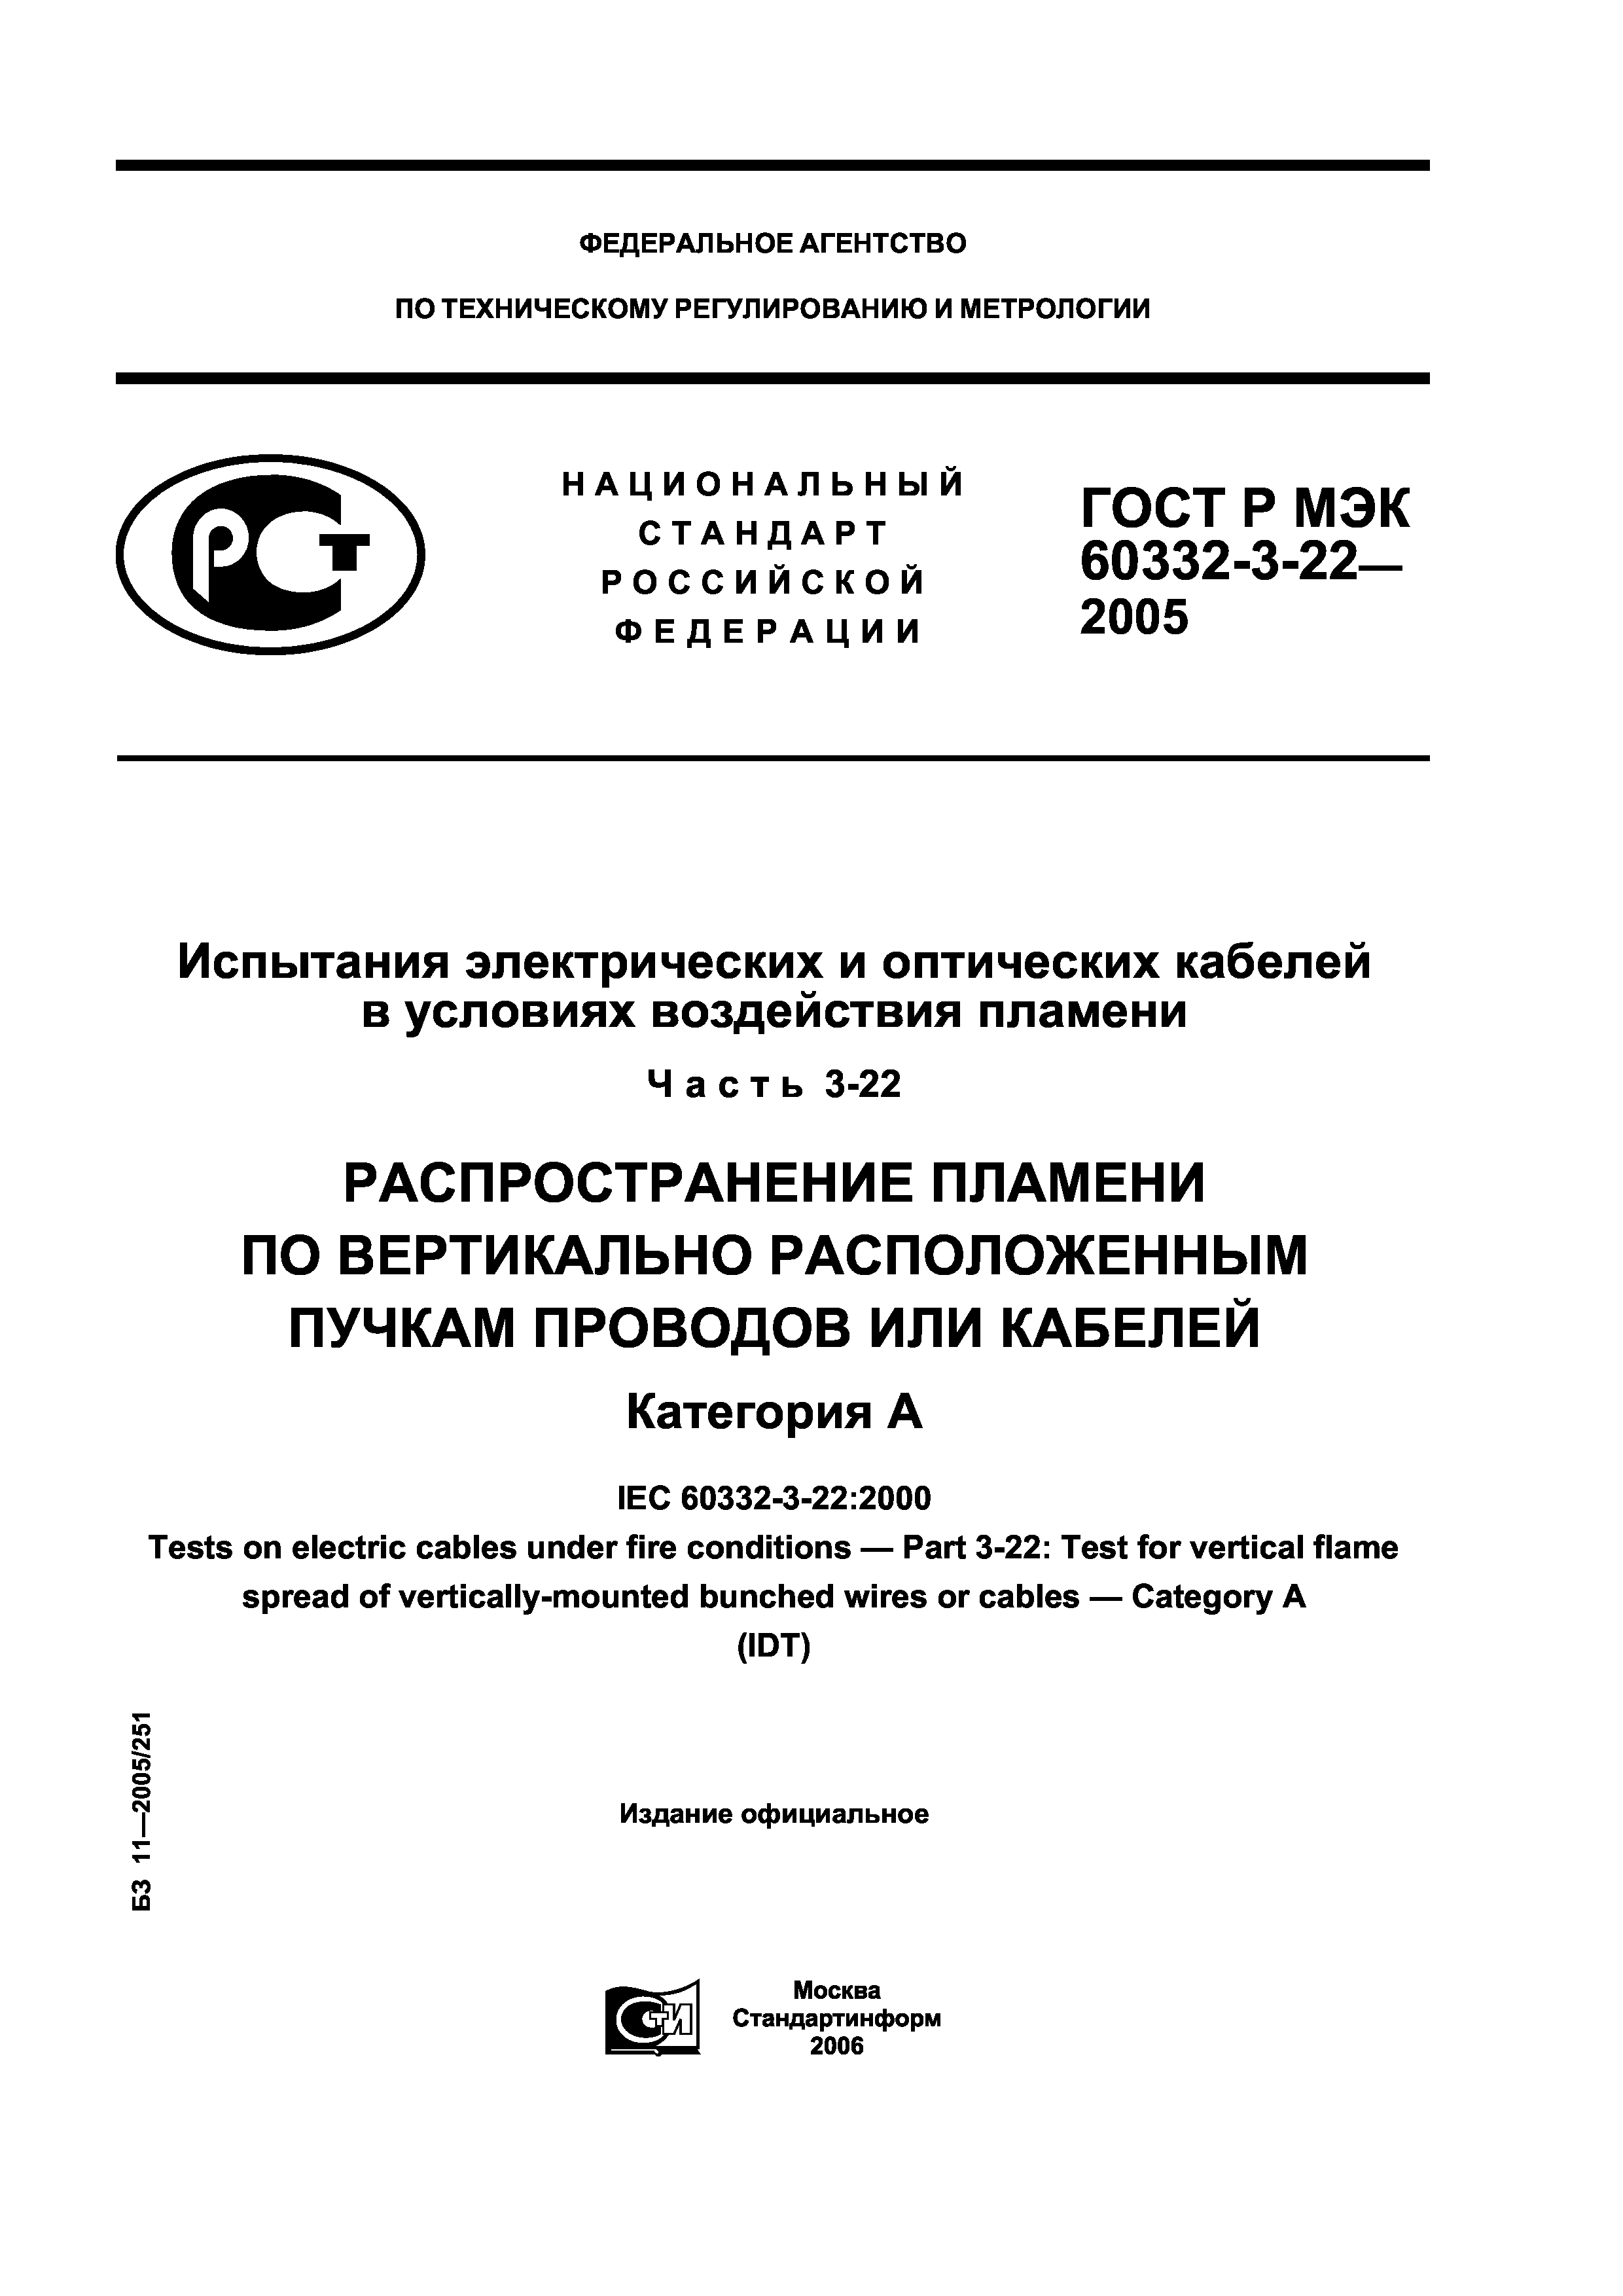 ГОСТ Р МЭК 60332-3-22-2005